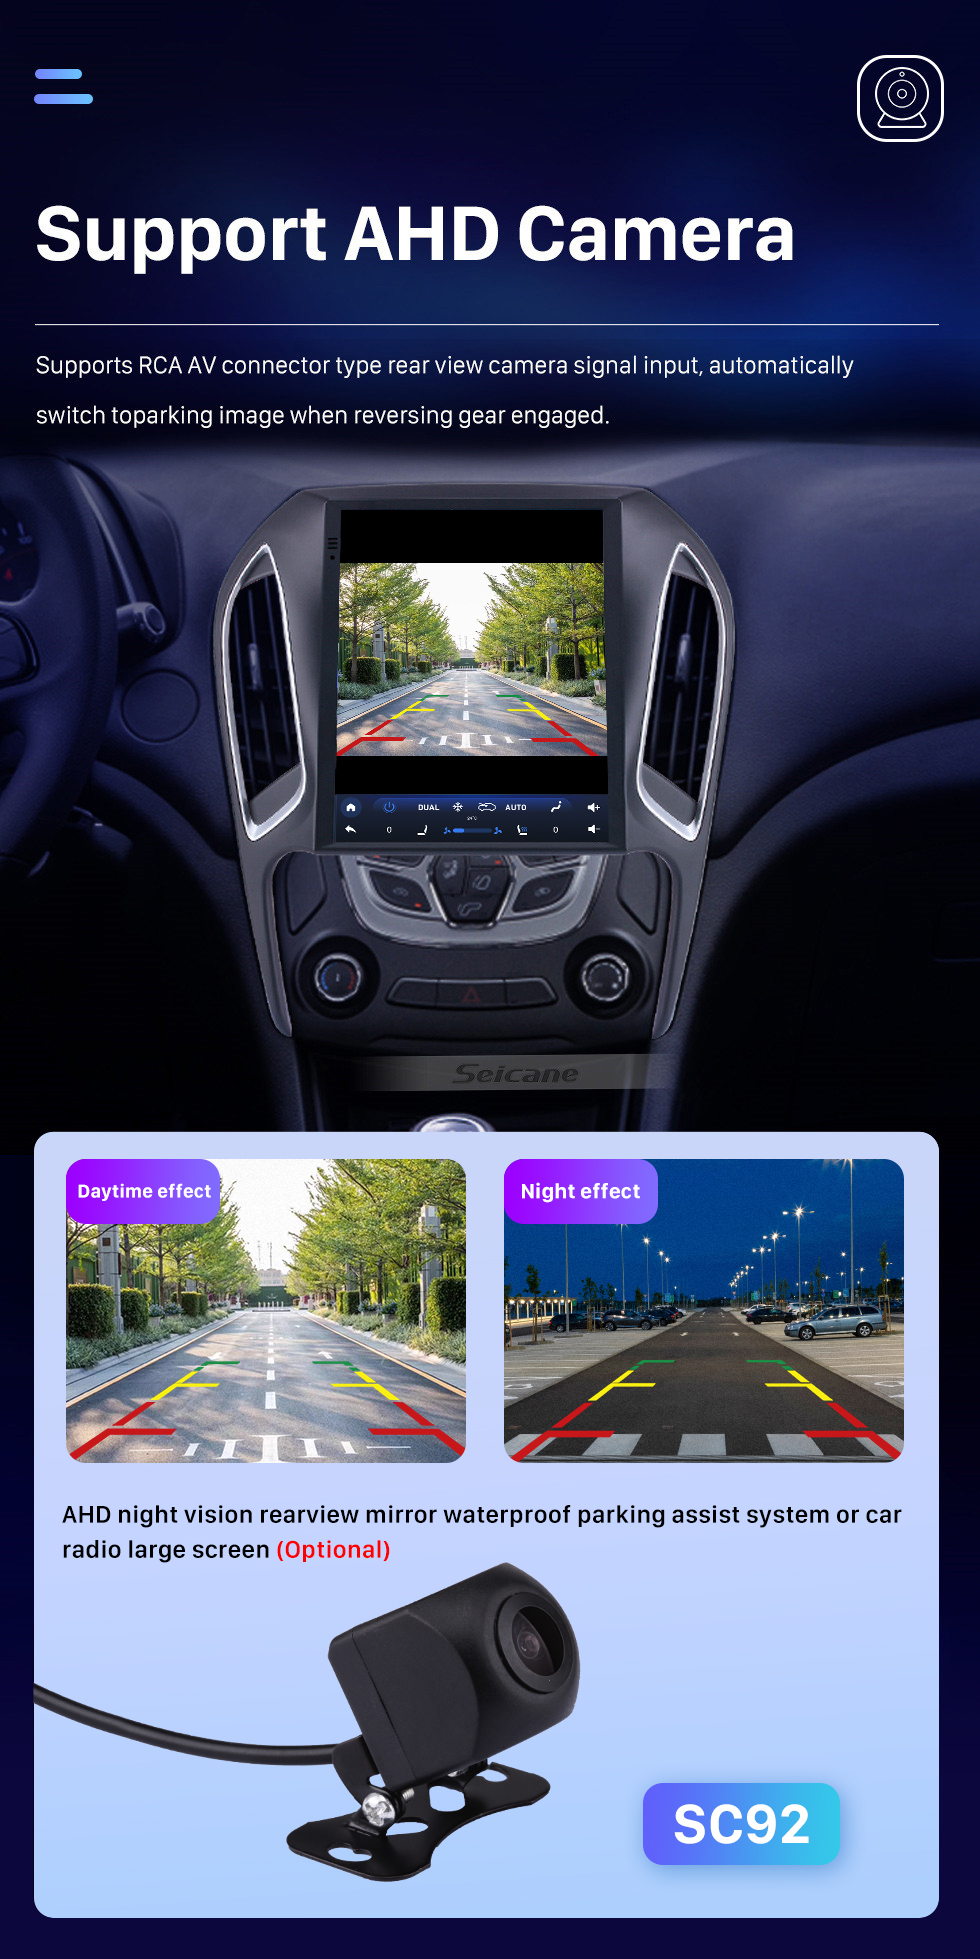 Seicane Android 10.0 9,7-дюймовый для Chery Arrizo 5 2016 года Радио с сенсорным экраном HD Система GPS-навигации Поддержка Bluetooth Carplay TPMS